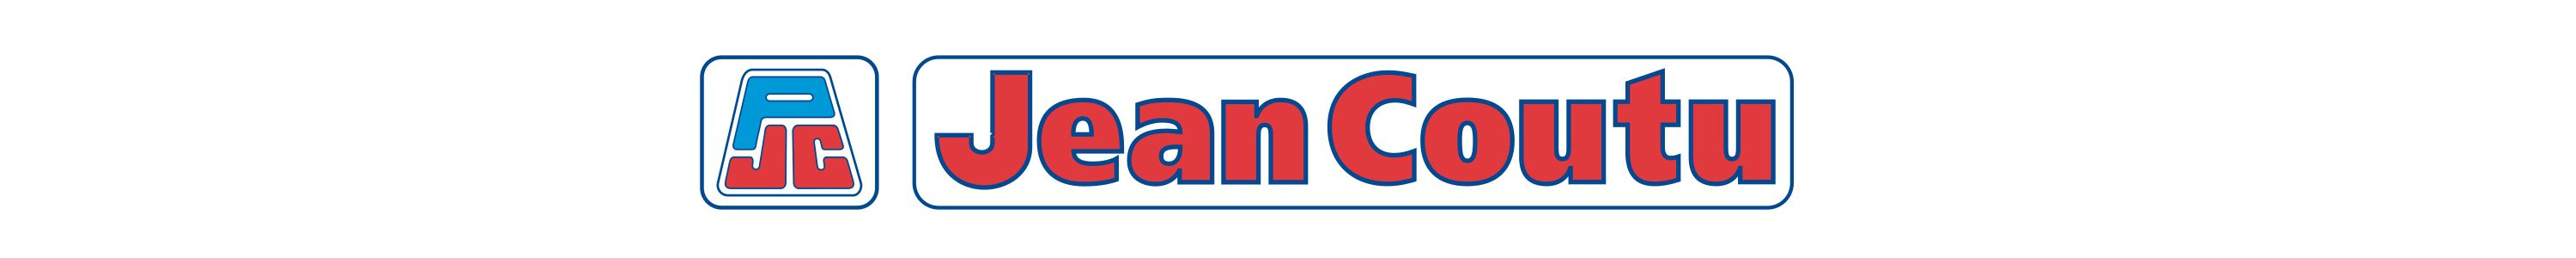 Jean Coutu Brand Logo